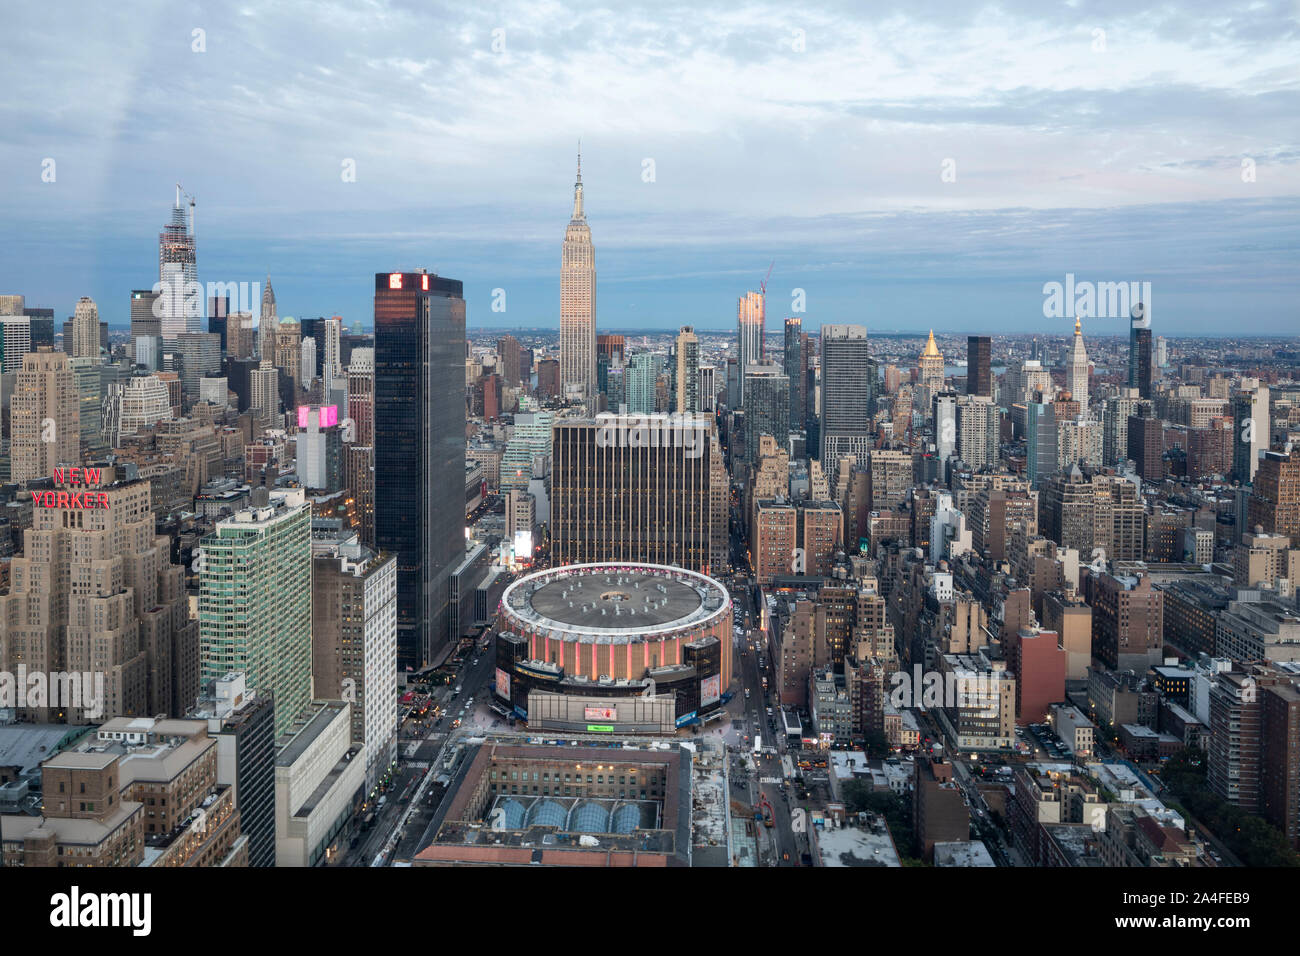 NEW YORK CITY, NY - Ottobre 5, 2019: vista aerea del Madison Square Garden a Manhattan, New York City, NY, STATI UNITI D'AMERICA, guardando ad ovest. Foto Stock